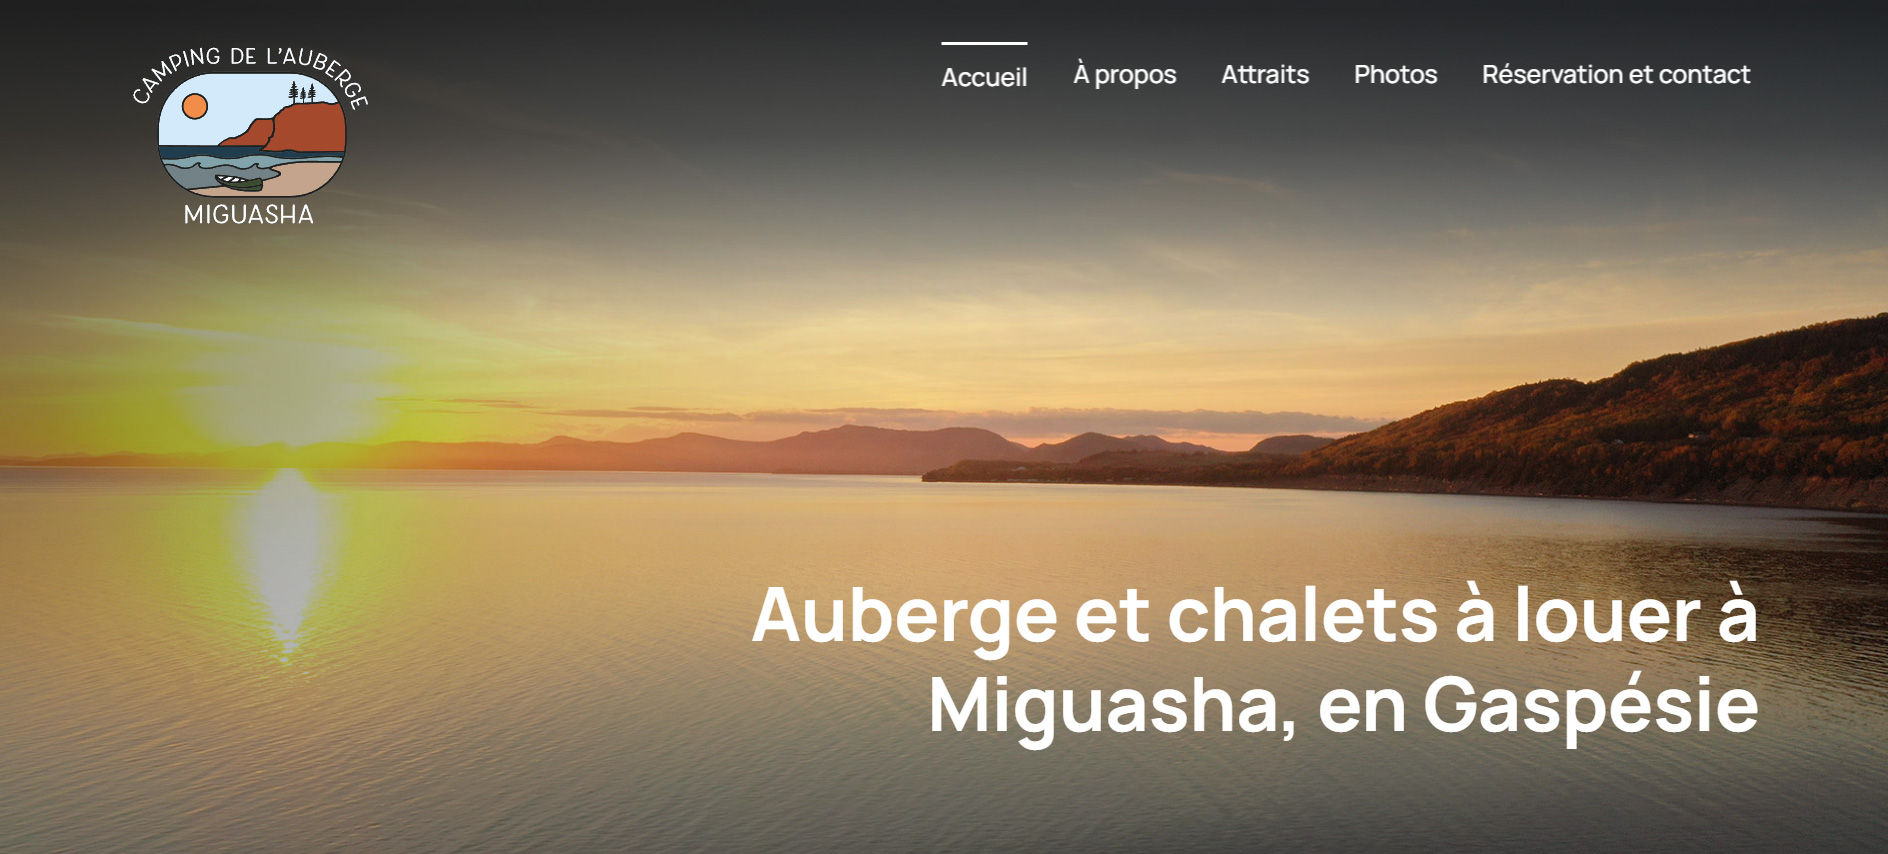 Page d'accueil du site web de l'auberge miguasha